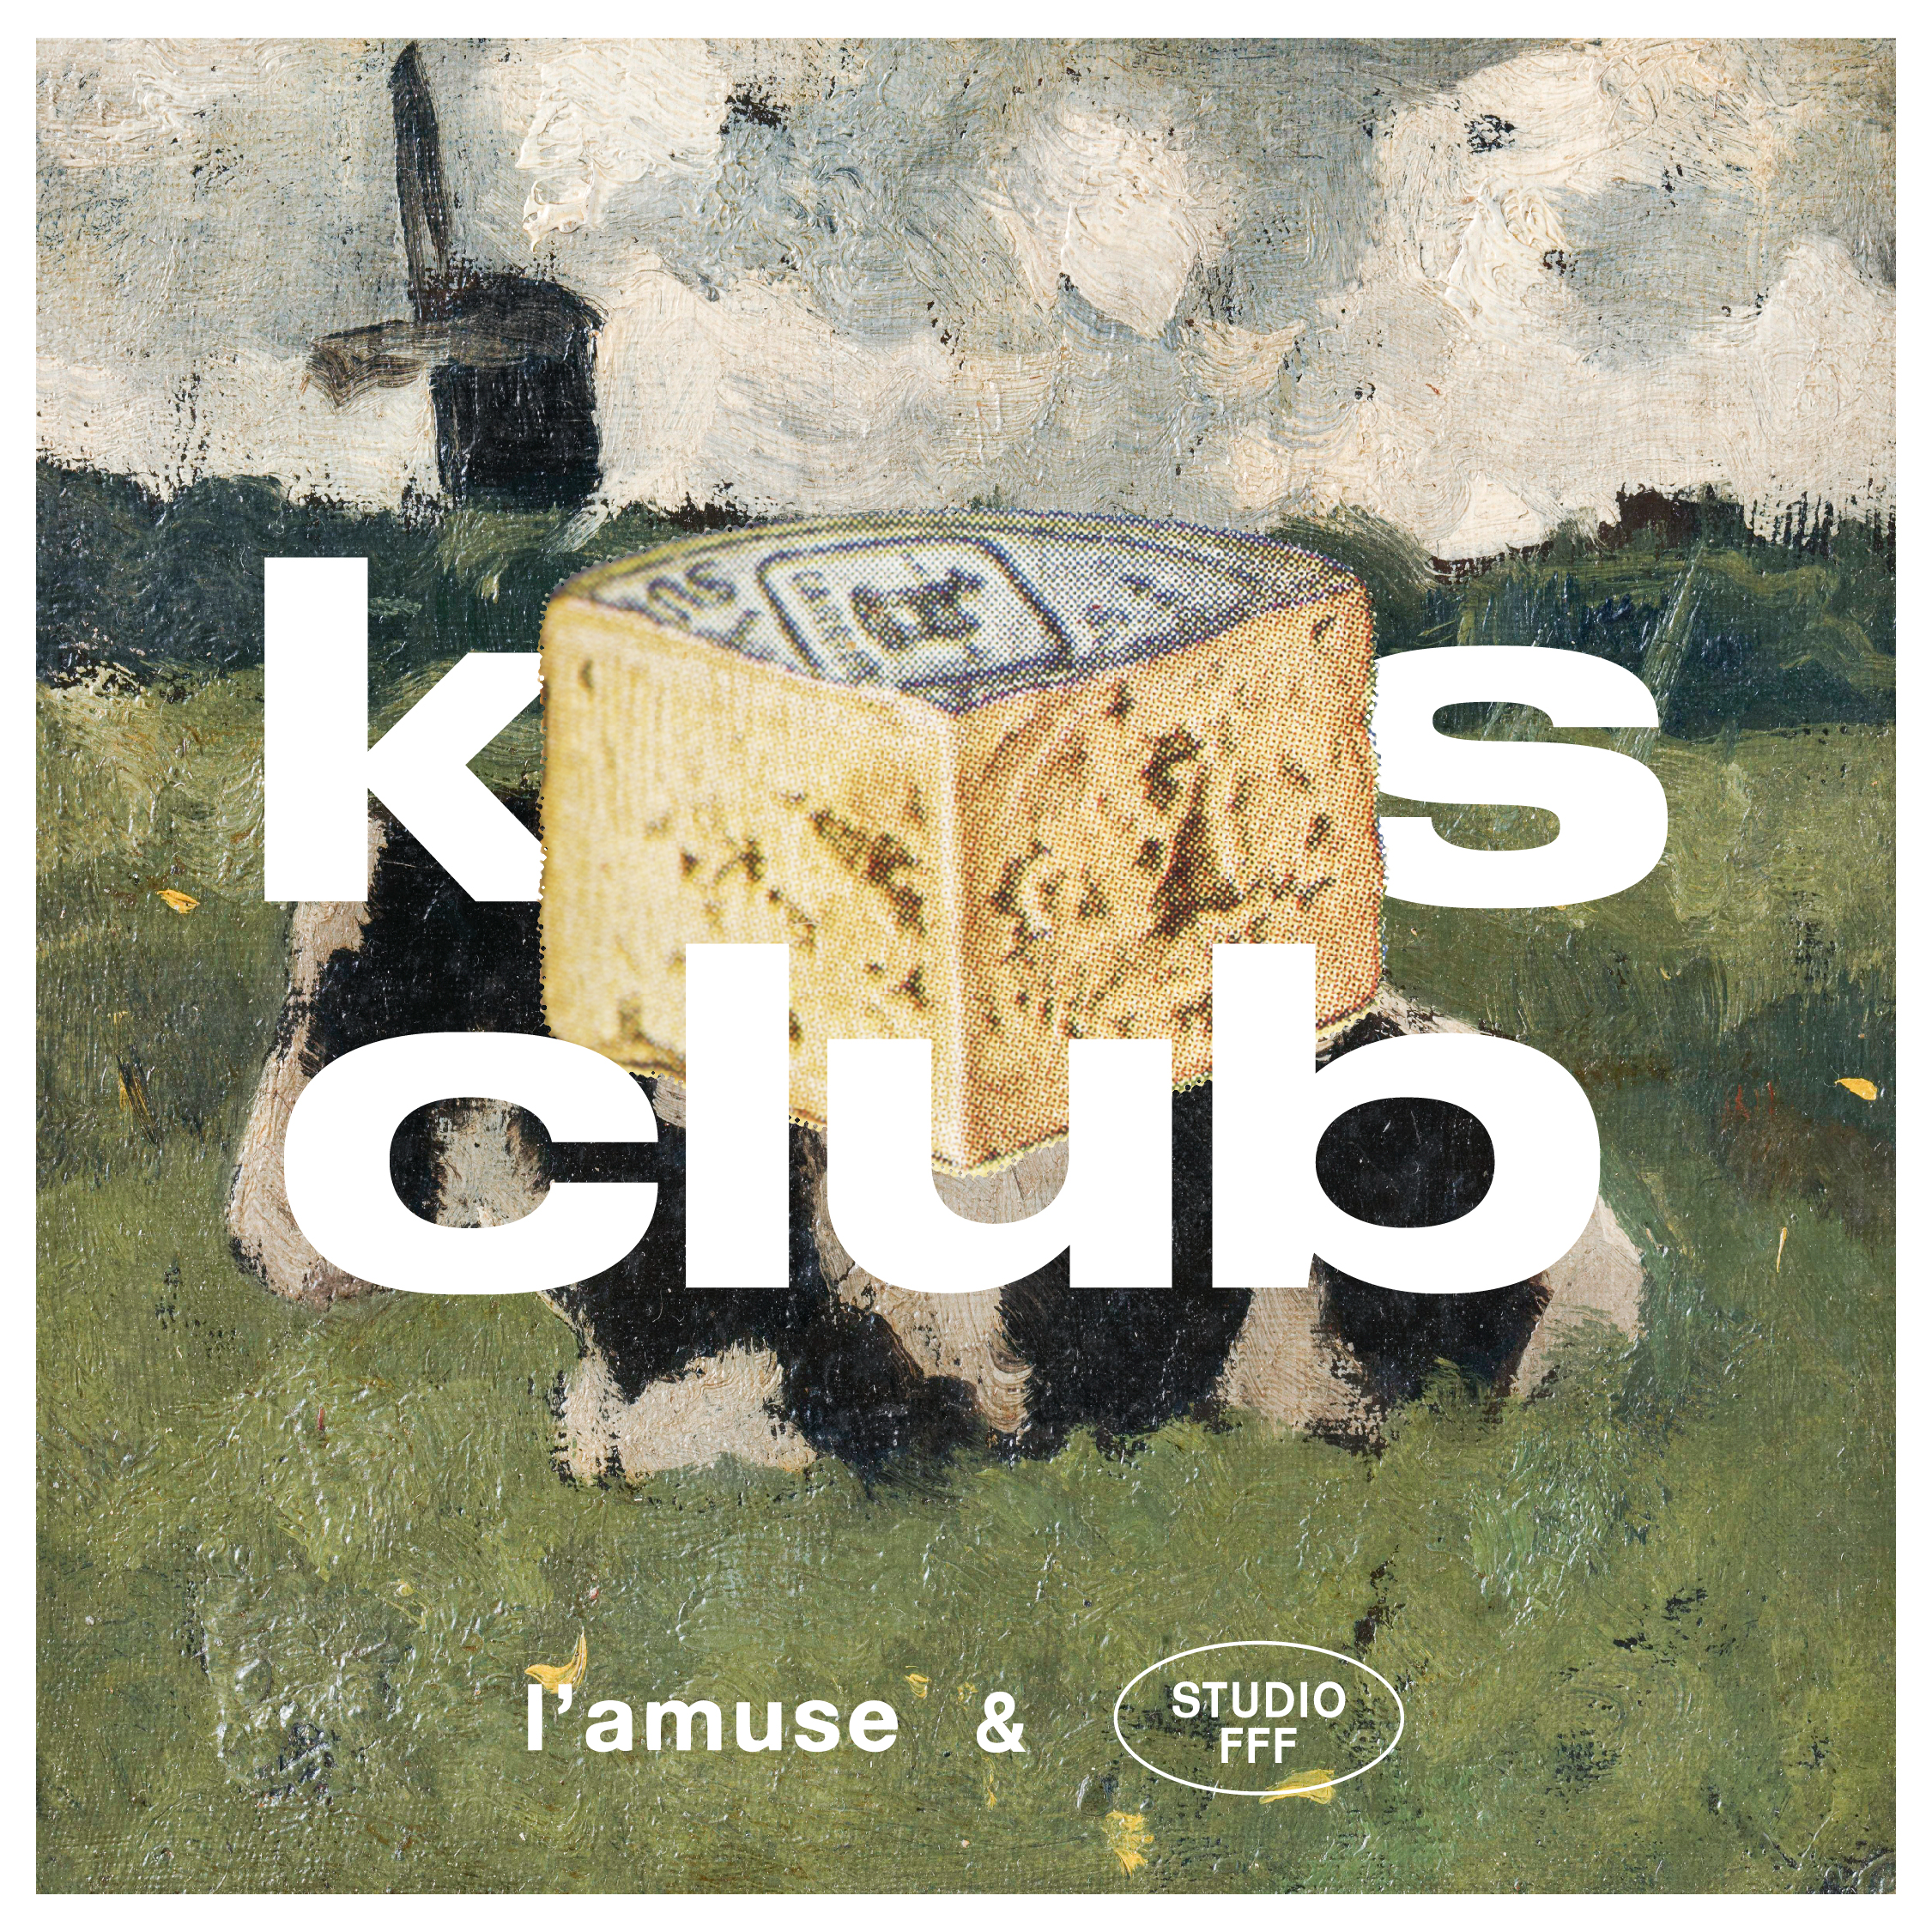 De Kaas Club